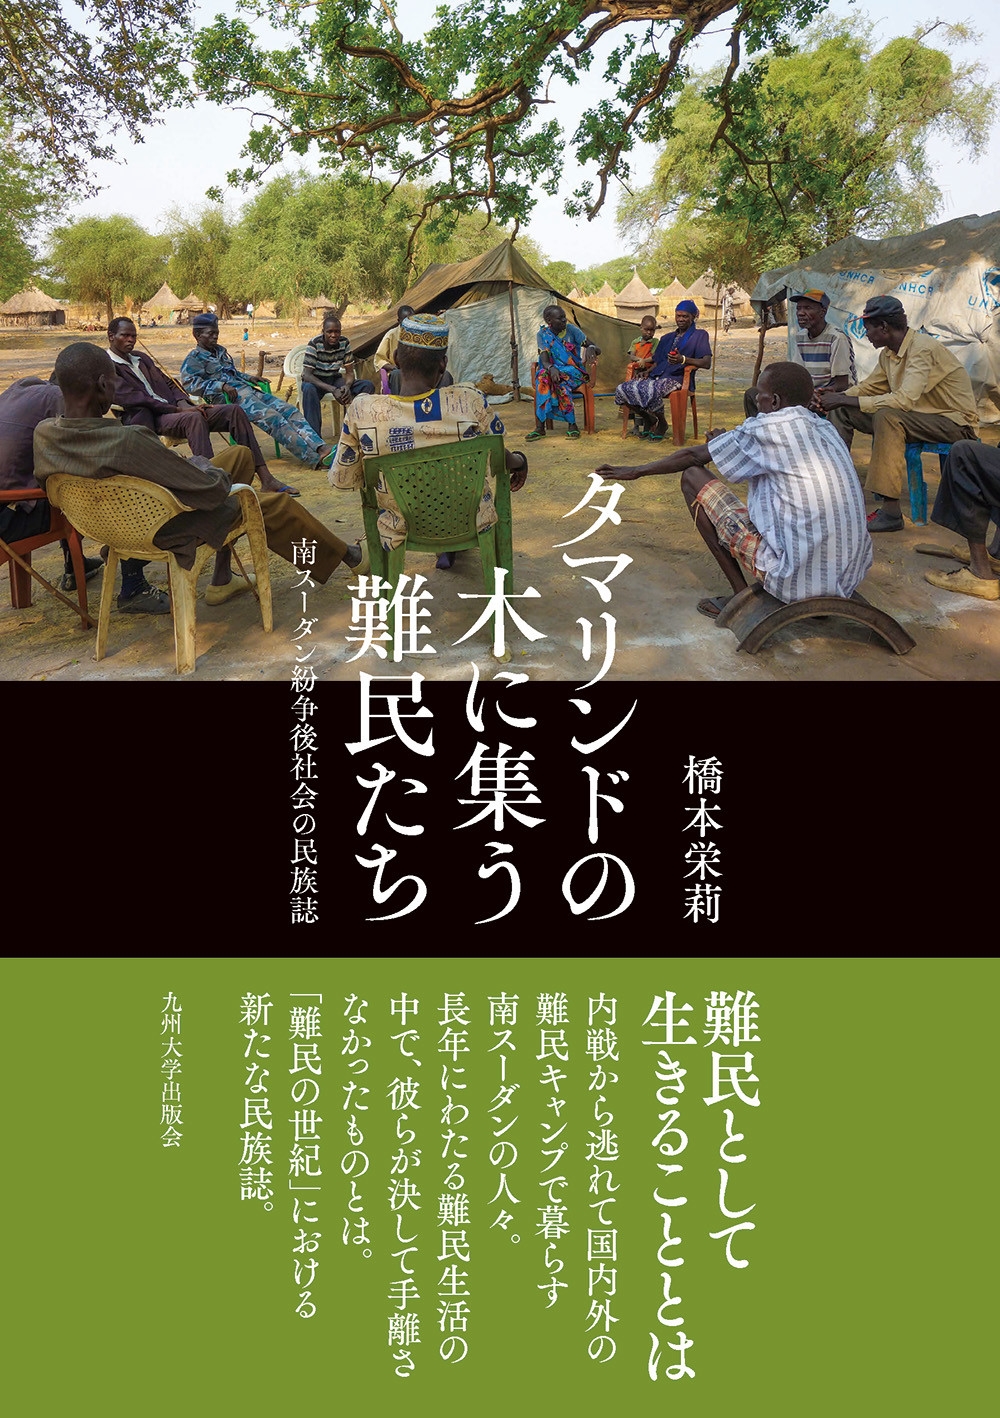 橋本栄莉/タマリンドの木に集う難民たち 南スーダン紛争後社会の民族誌